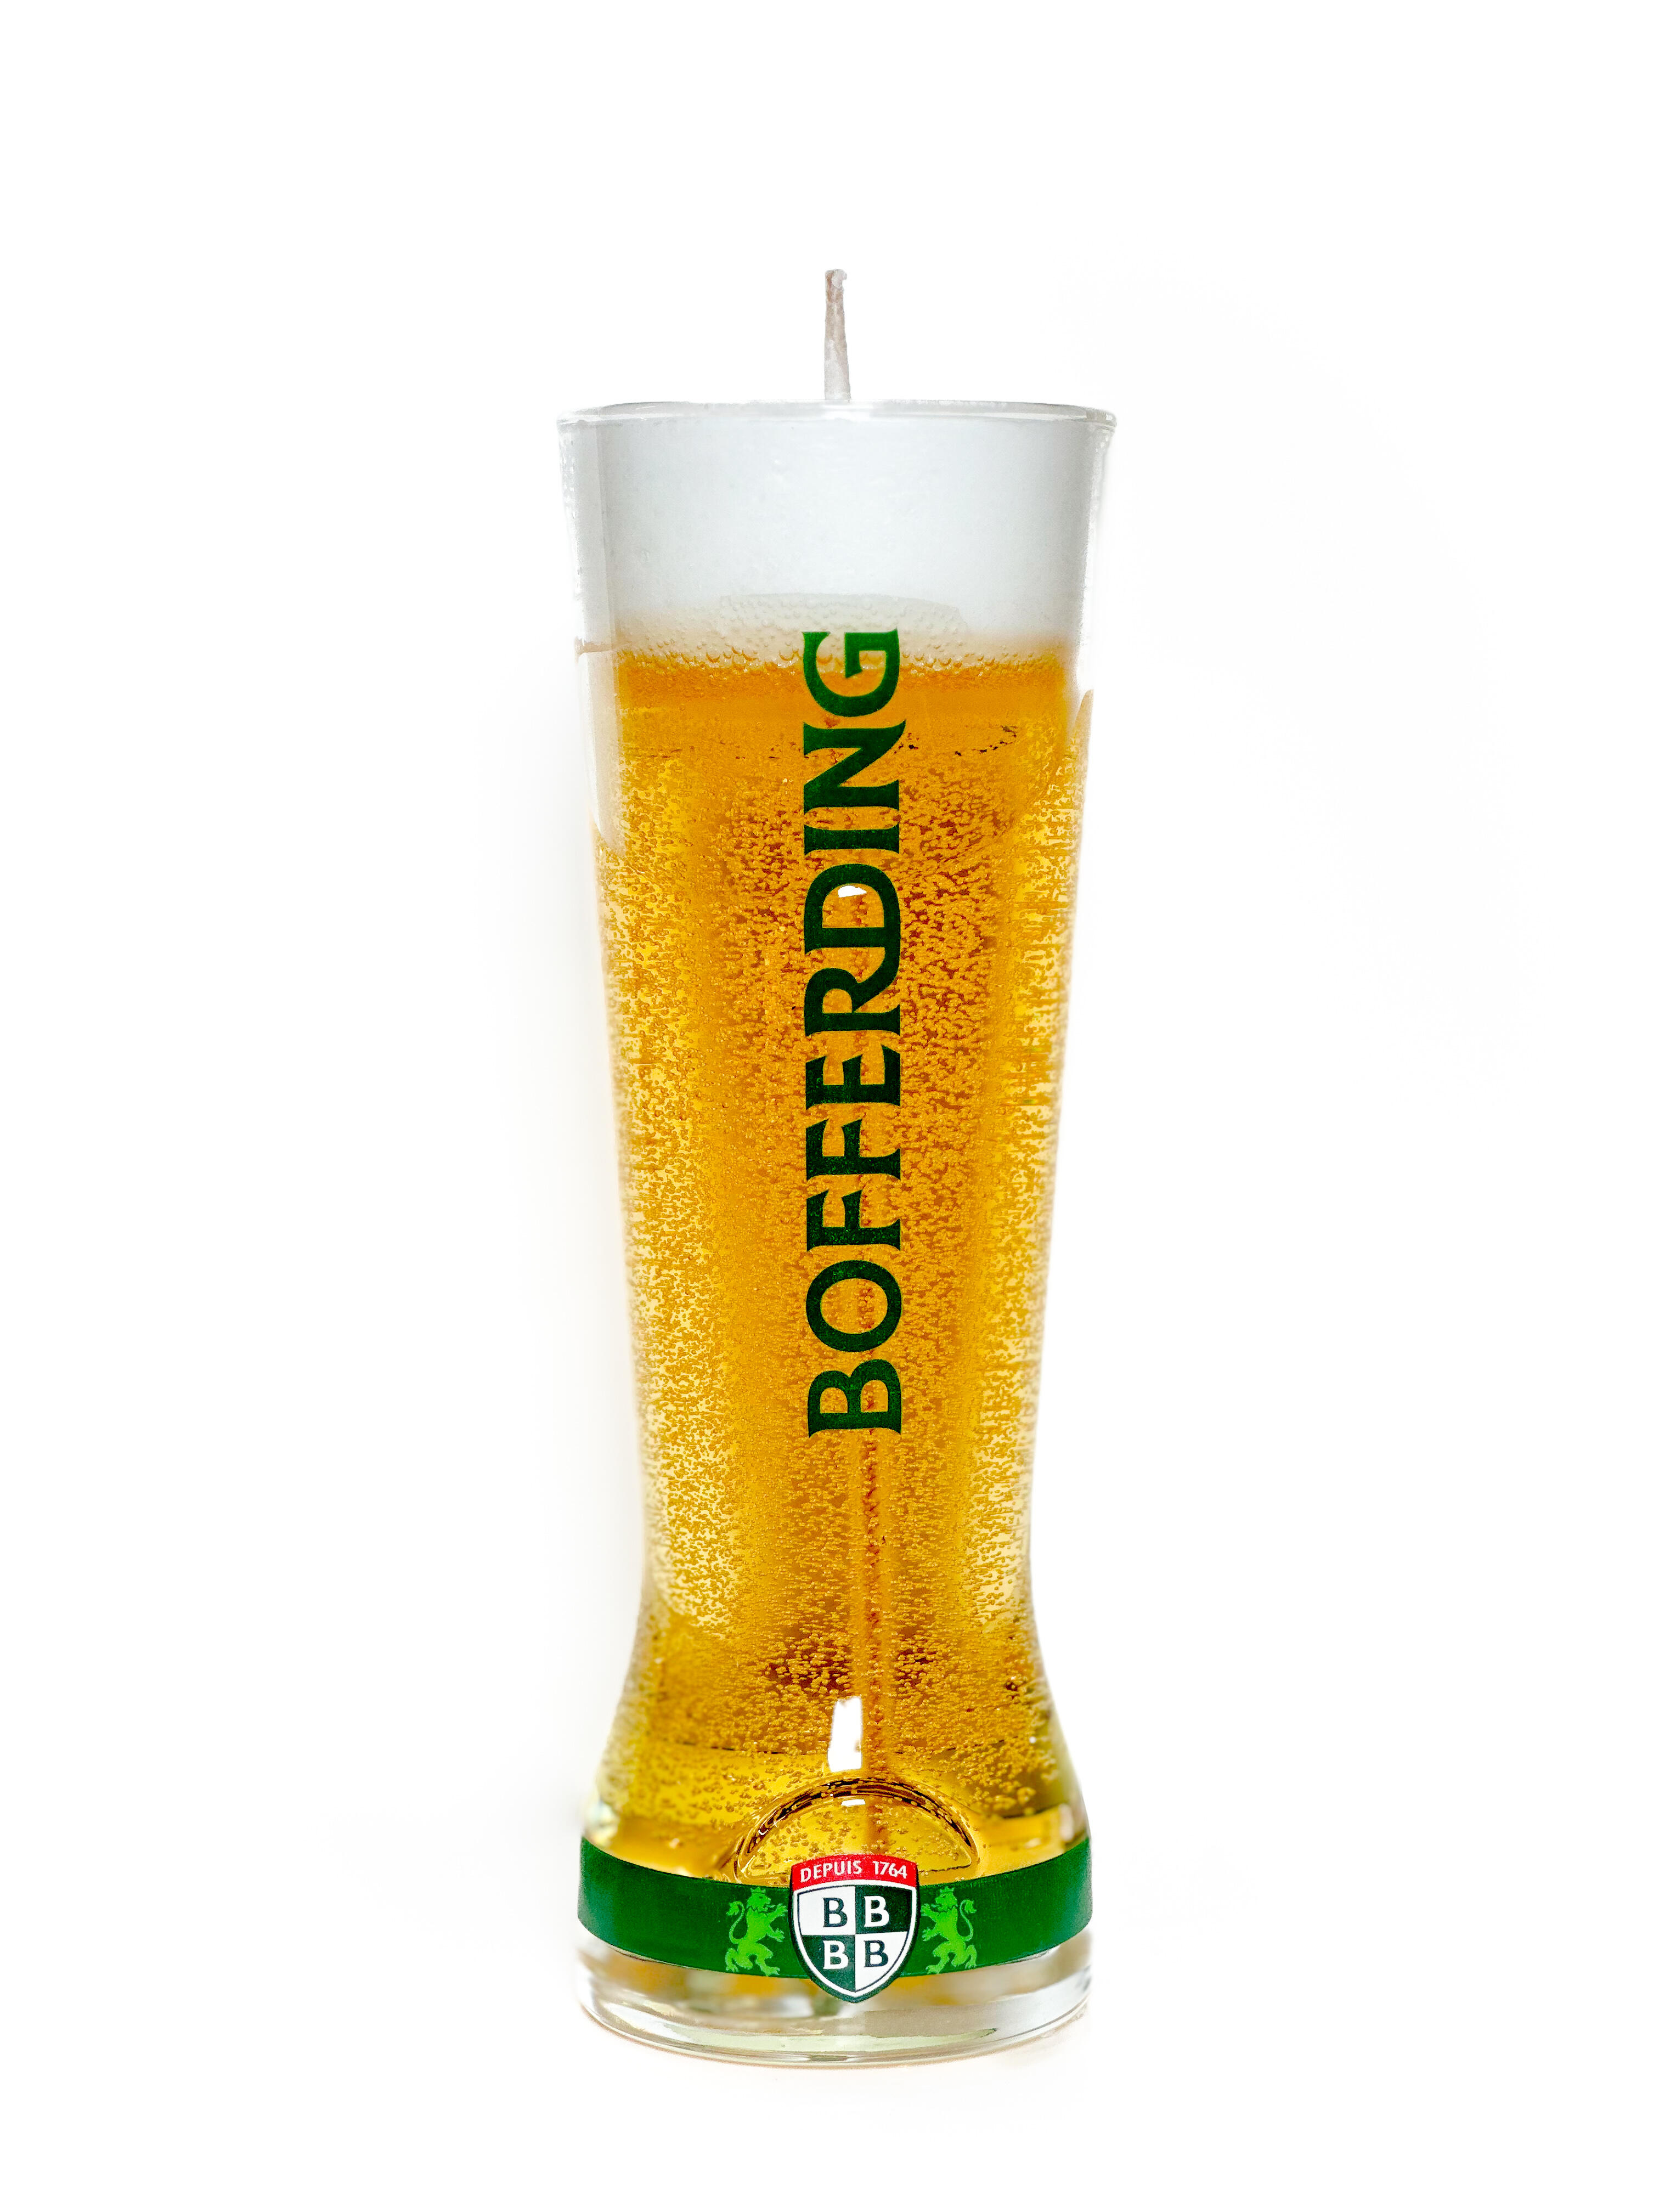 Beer candle "Flûte" - Bofferding